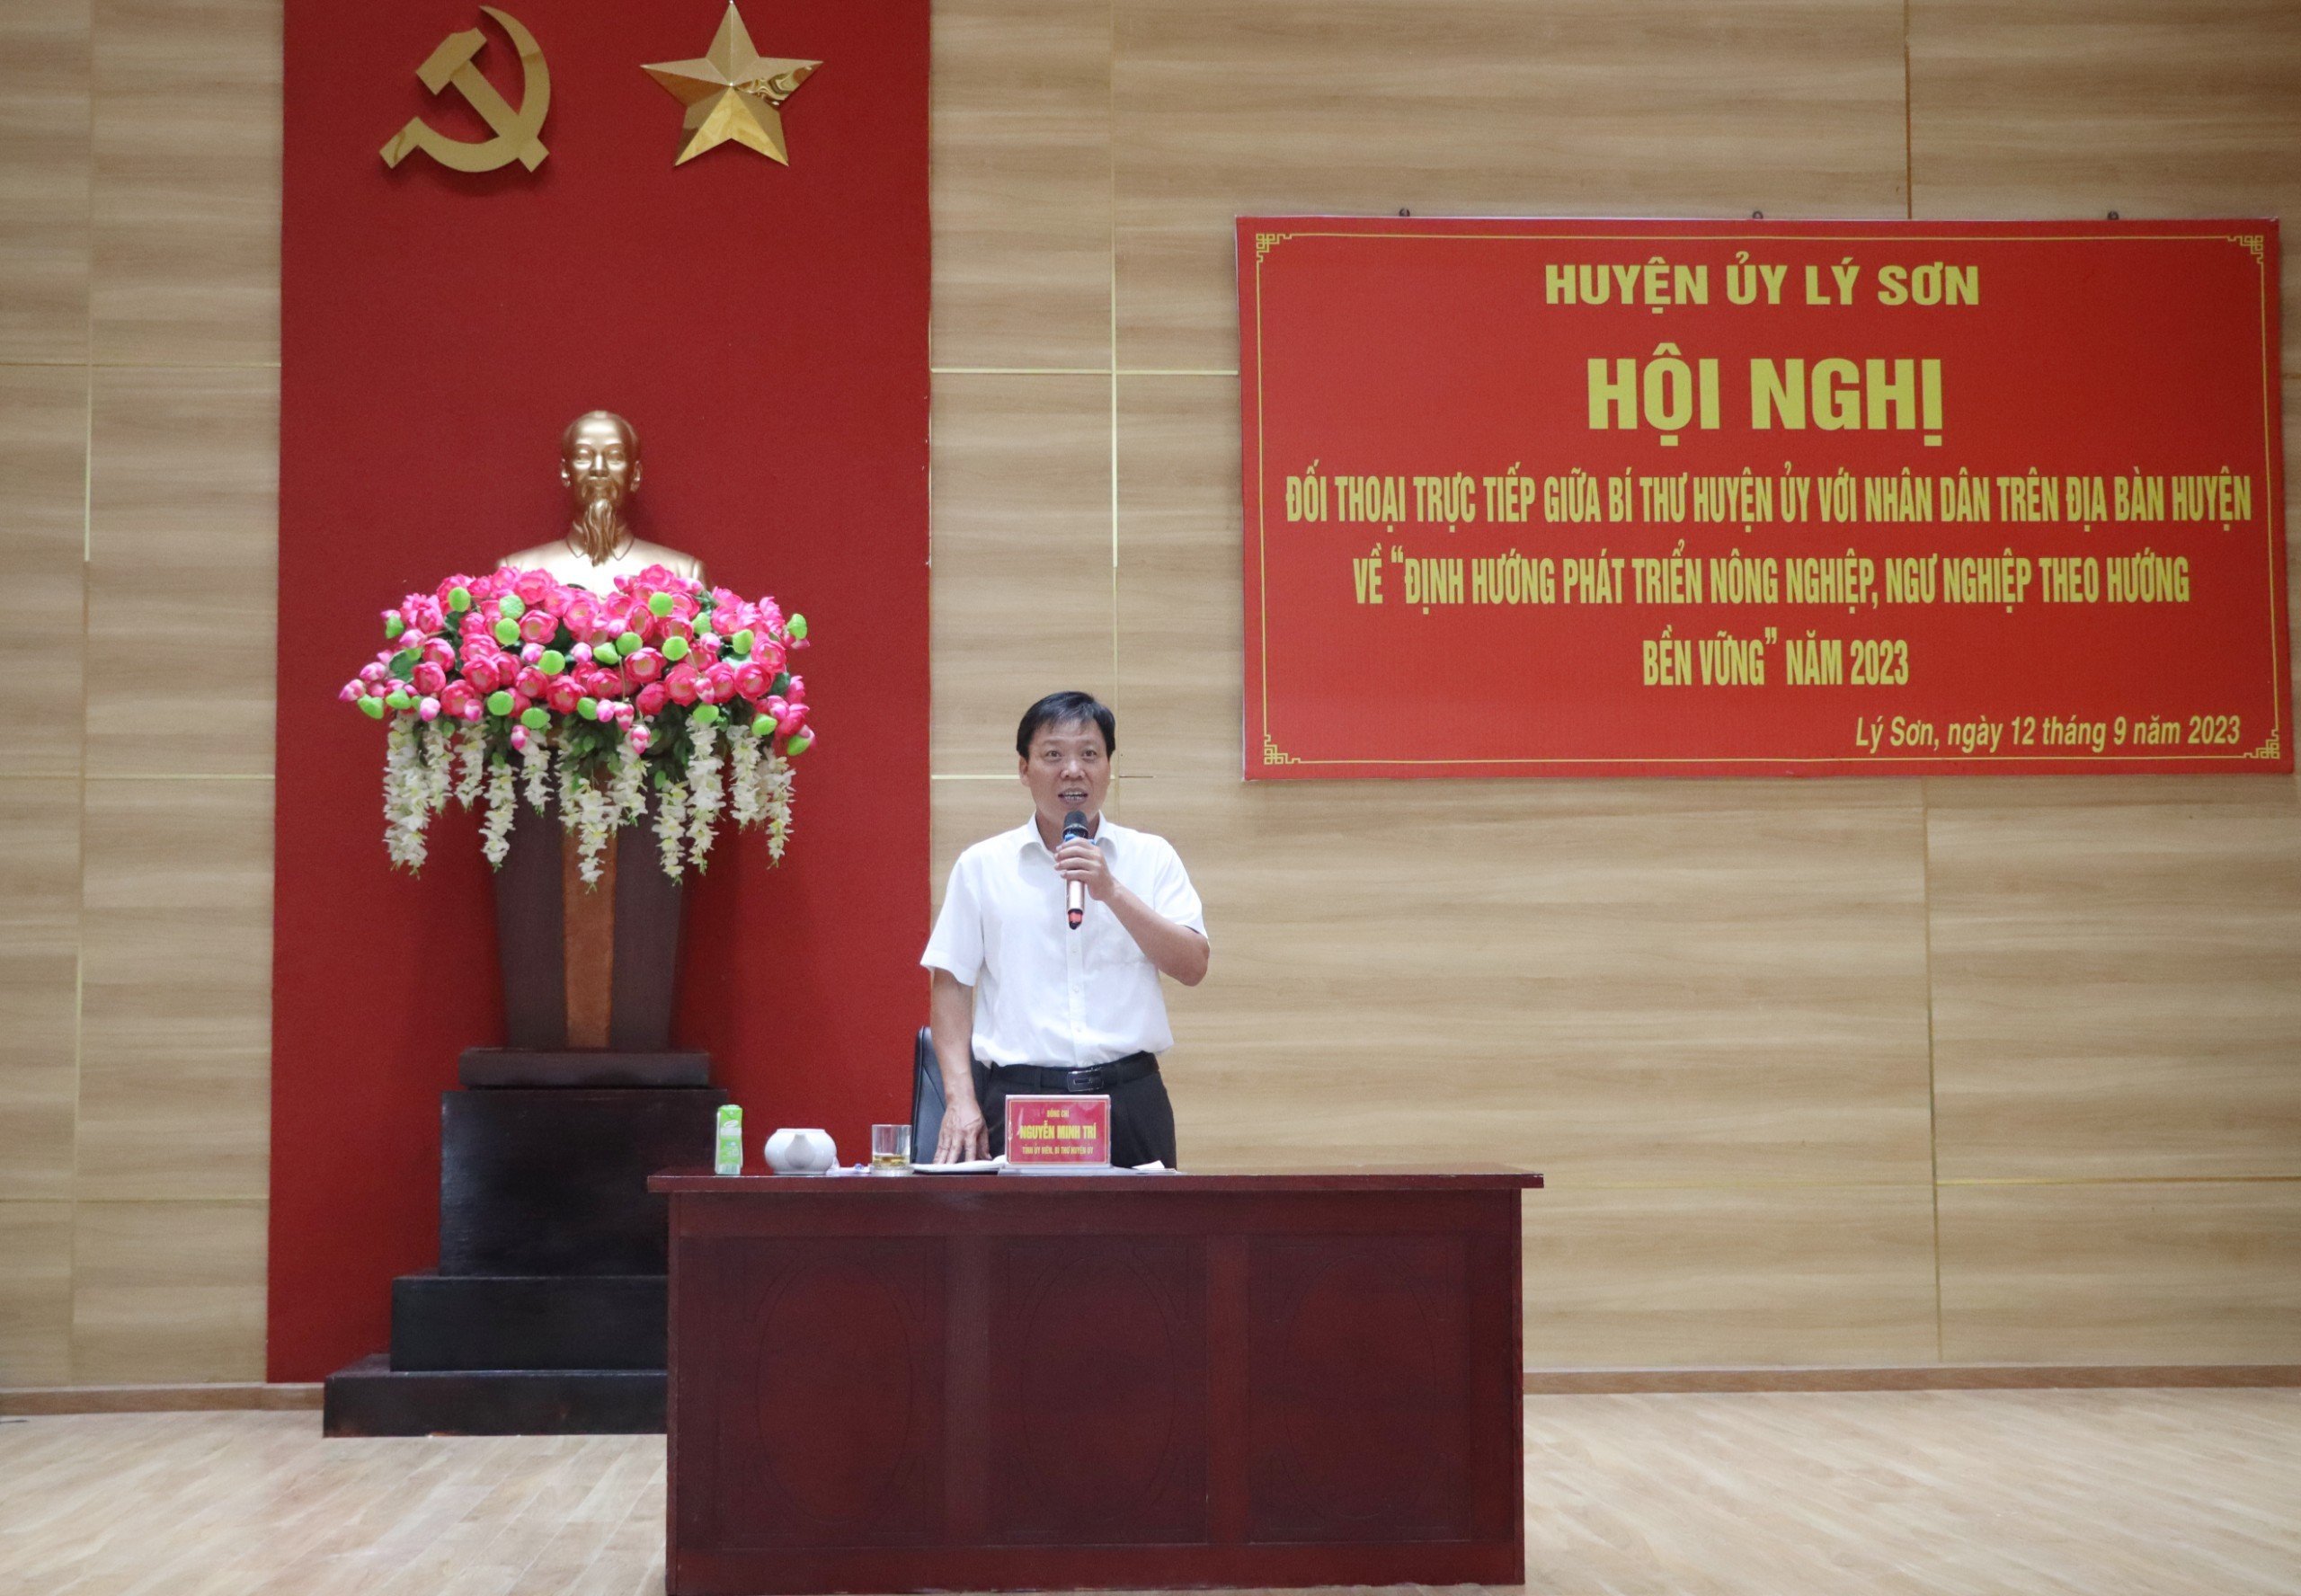 Bí thư Huyện ủy Lý Sơn đối thoại với nhân dân về “Định hướng phát triển nông nghiệp, ngư nghiệp theo hướng bền vững”